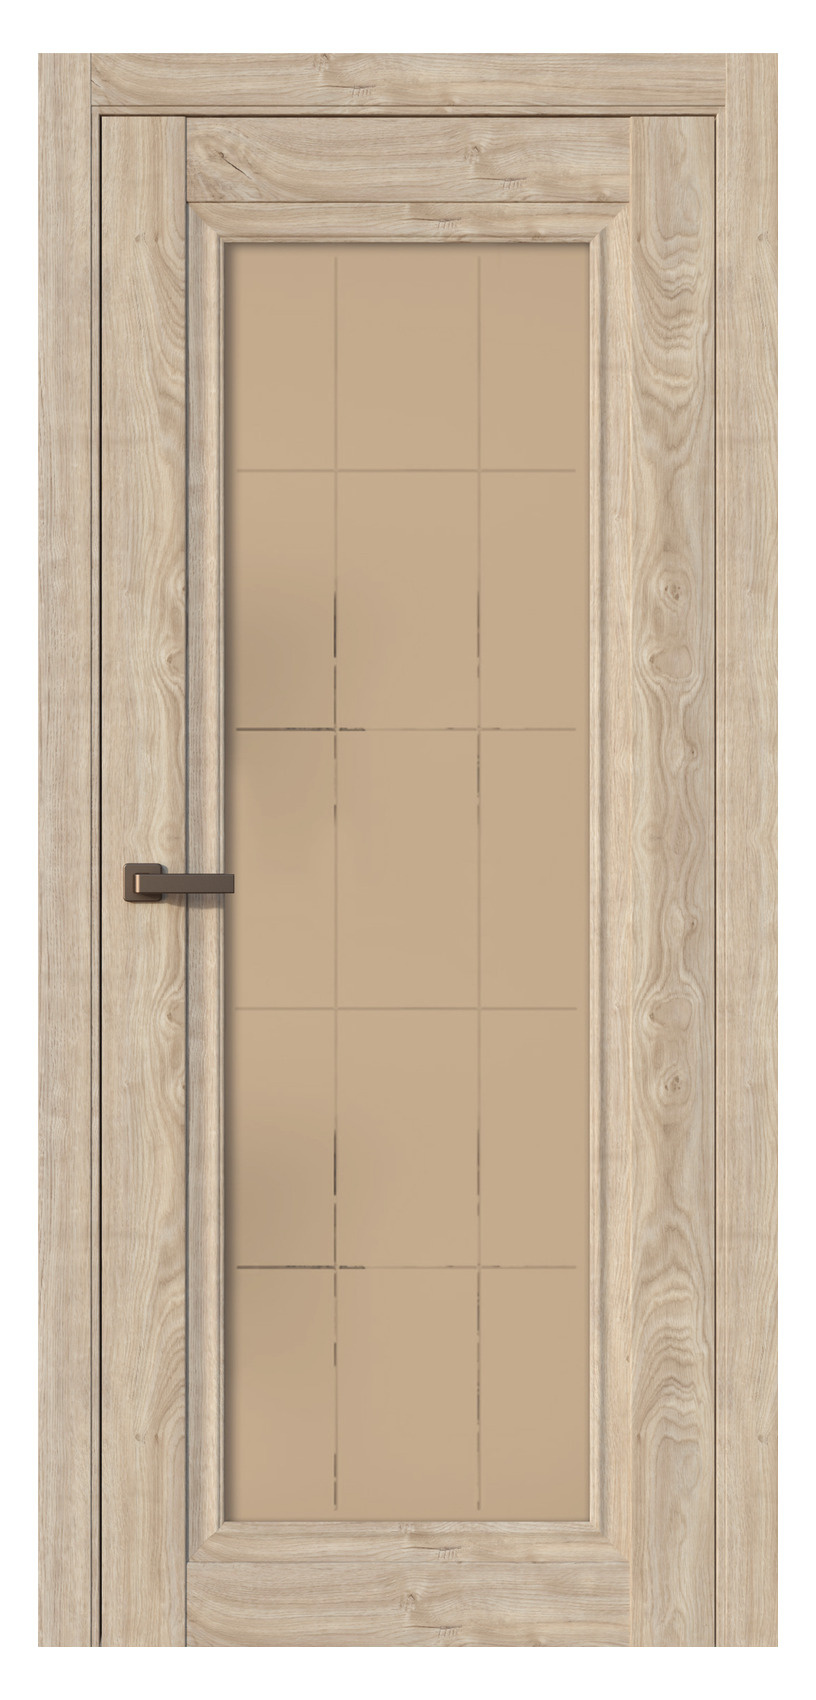 Questdoors Межкомнатная дверь QH6, арт. 17534 - фото №1